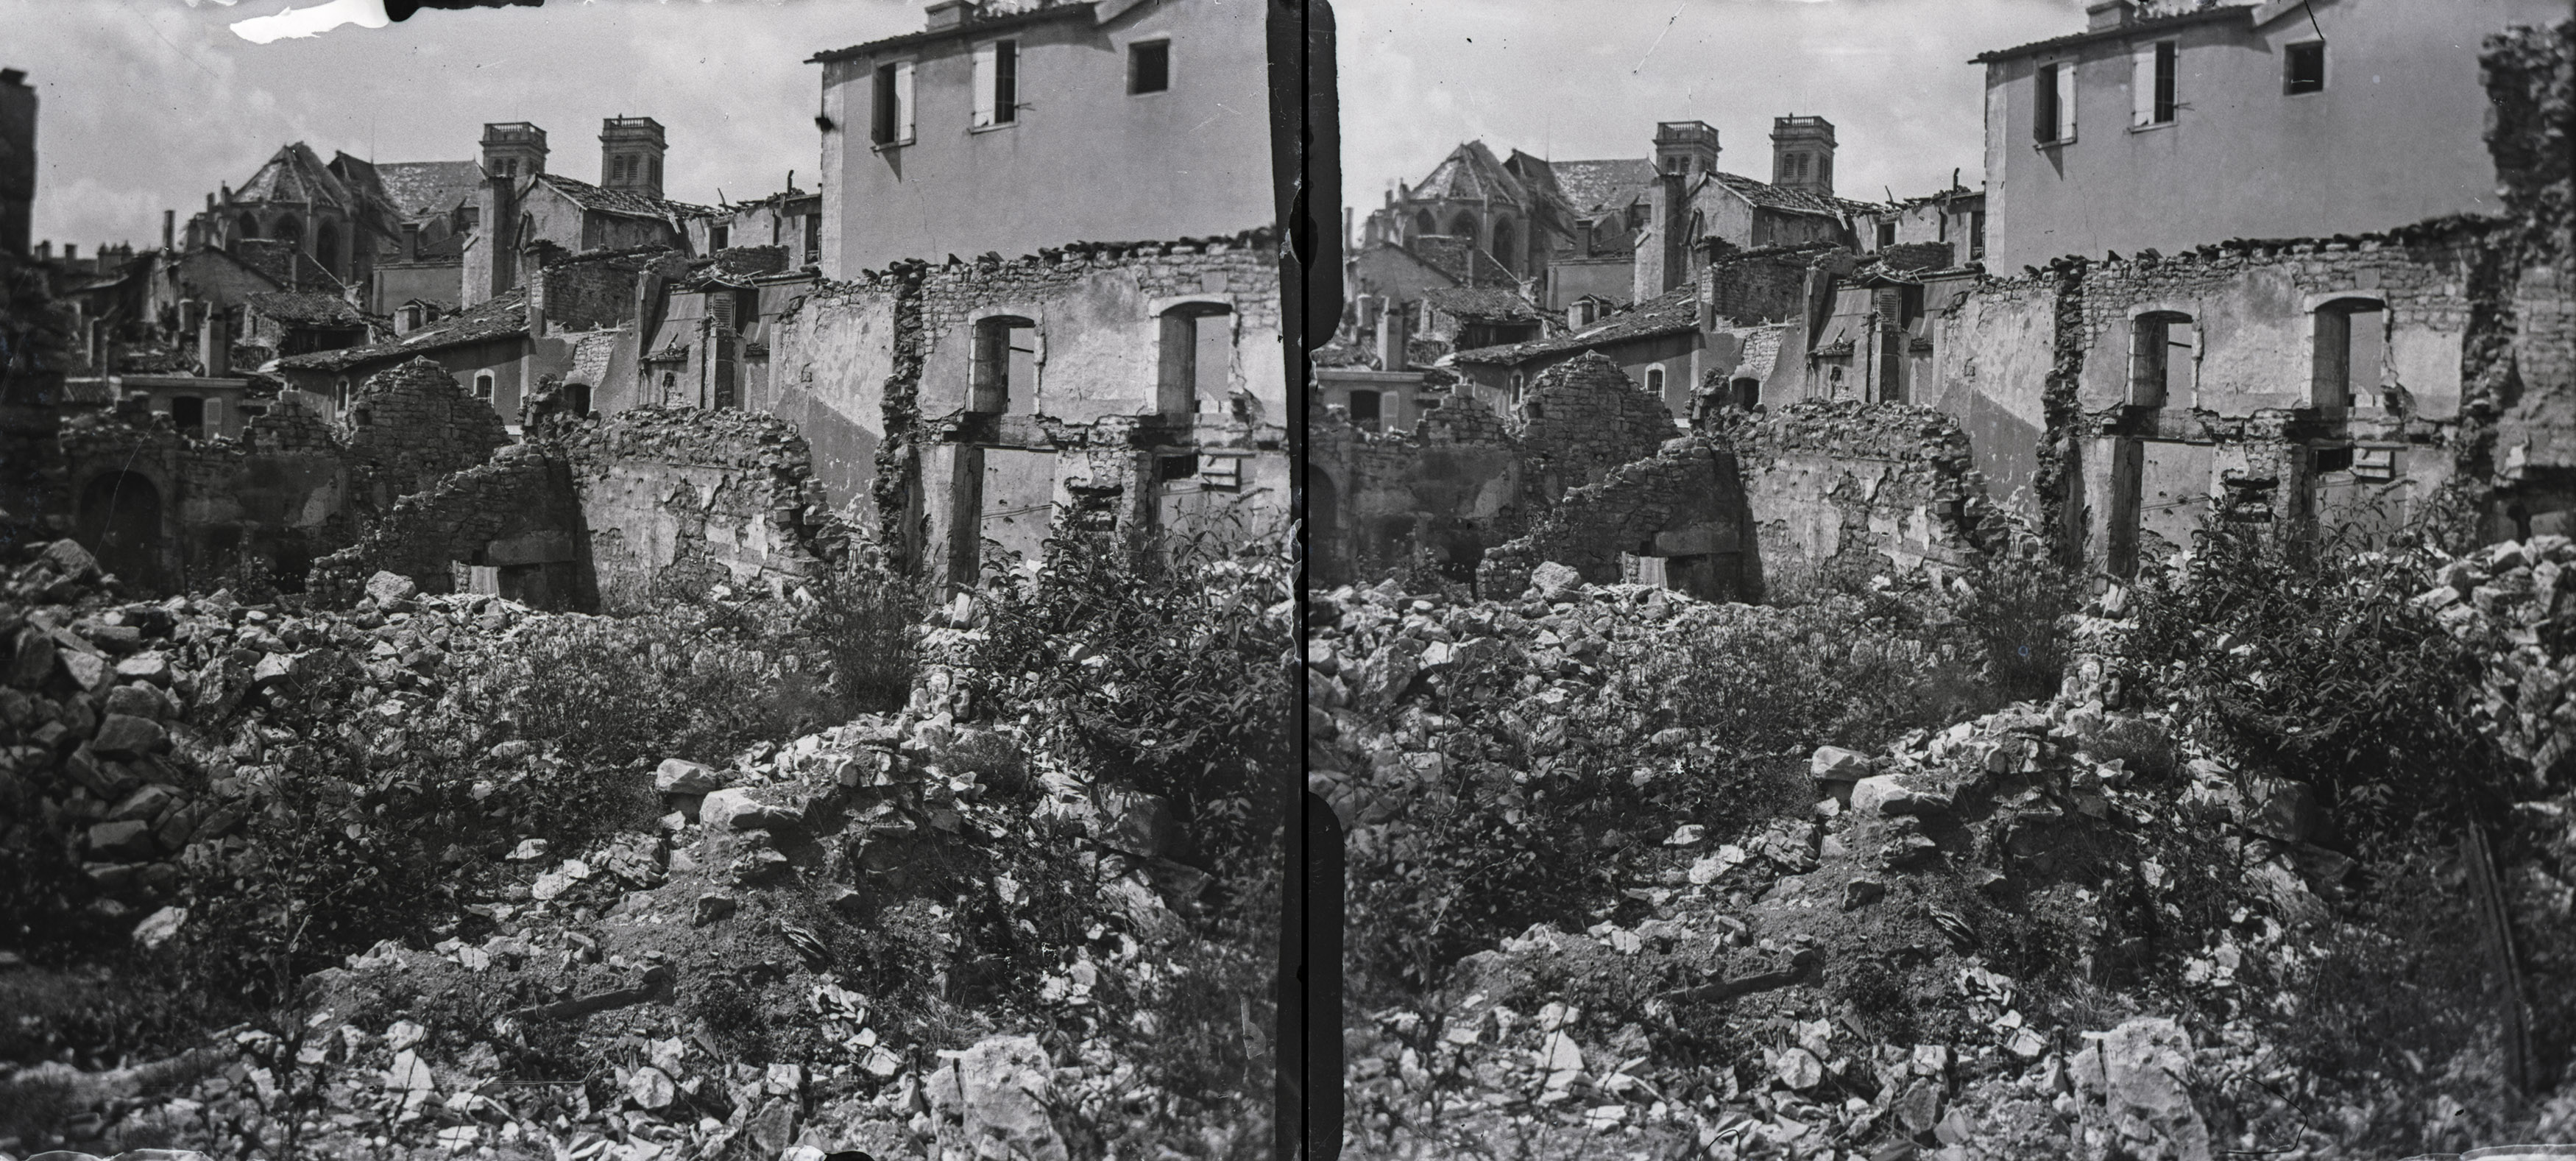 Verdun, rue Mazel démolie ancient remparts - Verdun, demolished ancient ramparts, rue Mazel